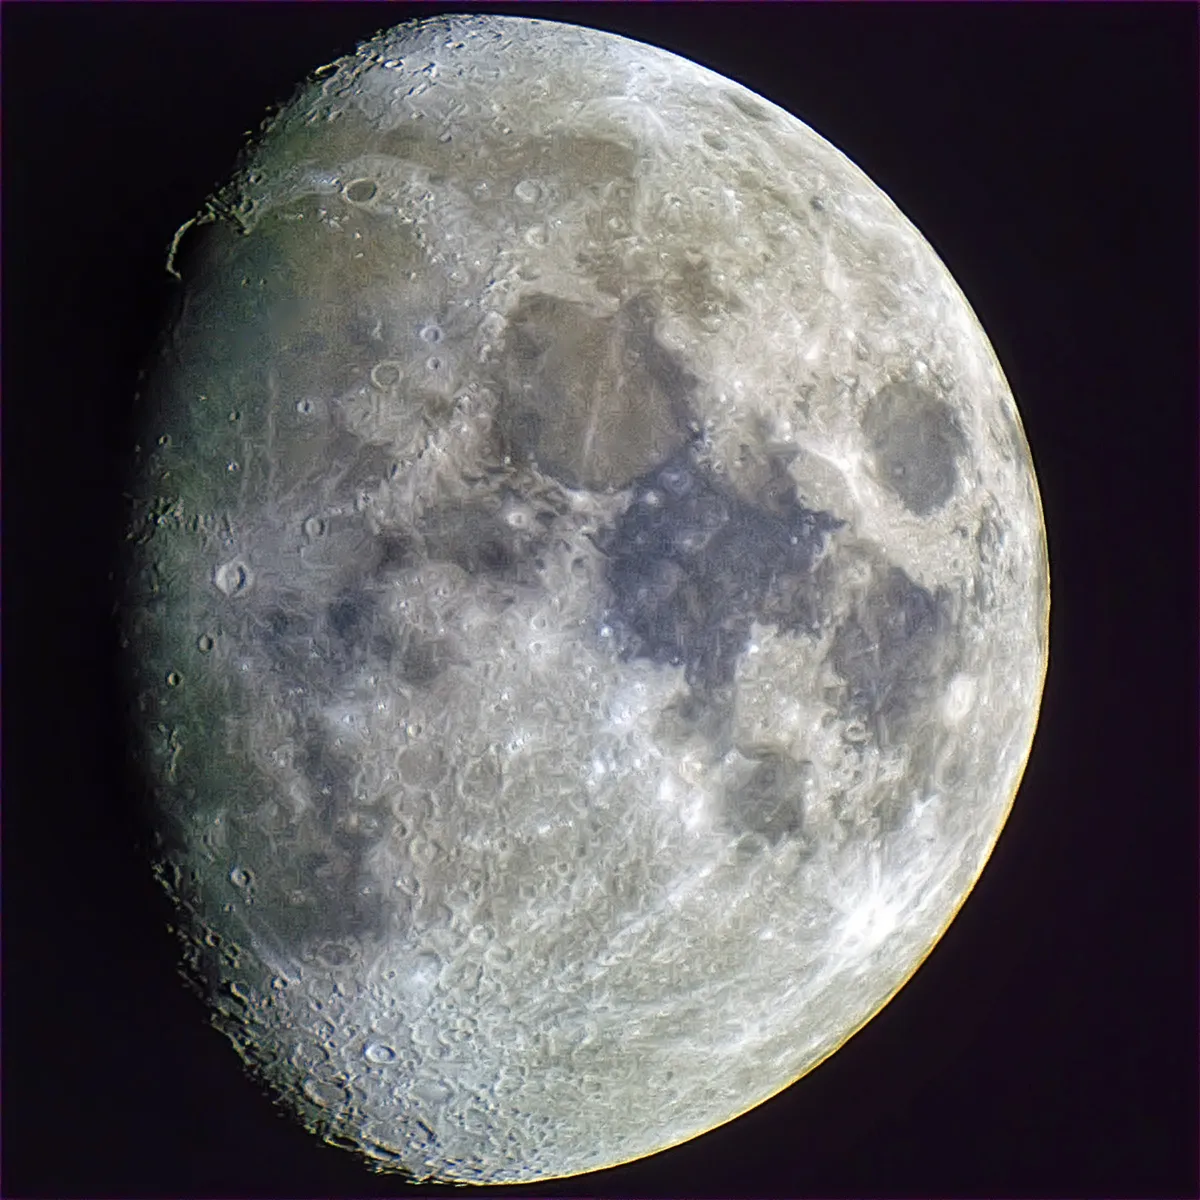 The Moon - 2016-01-19 20:14z by Paul Hutchinson, UK. Equipment: Skywatcher Maksutov 127mm, Nikon D60, Skywatcher AltAz.